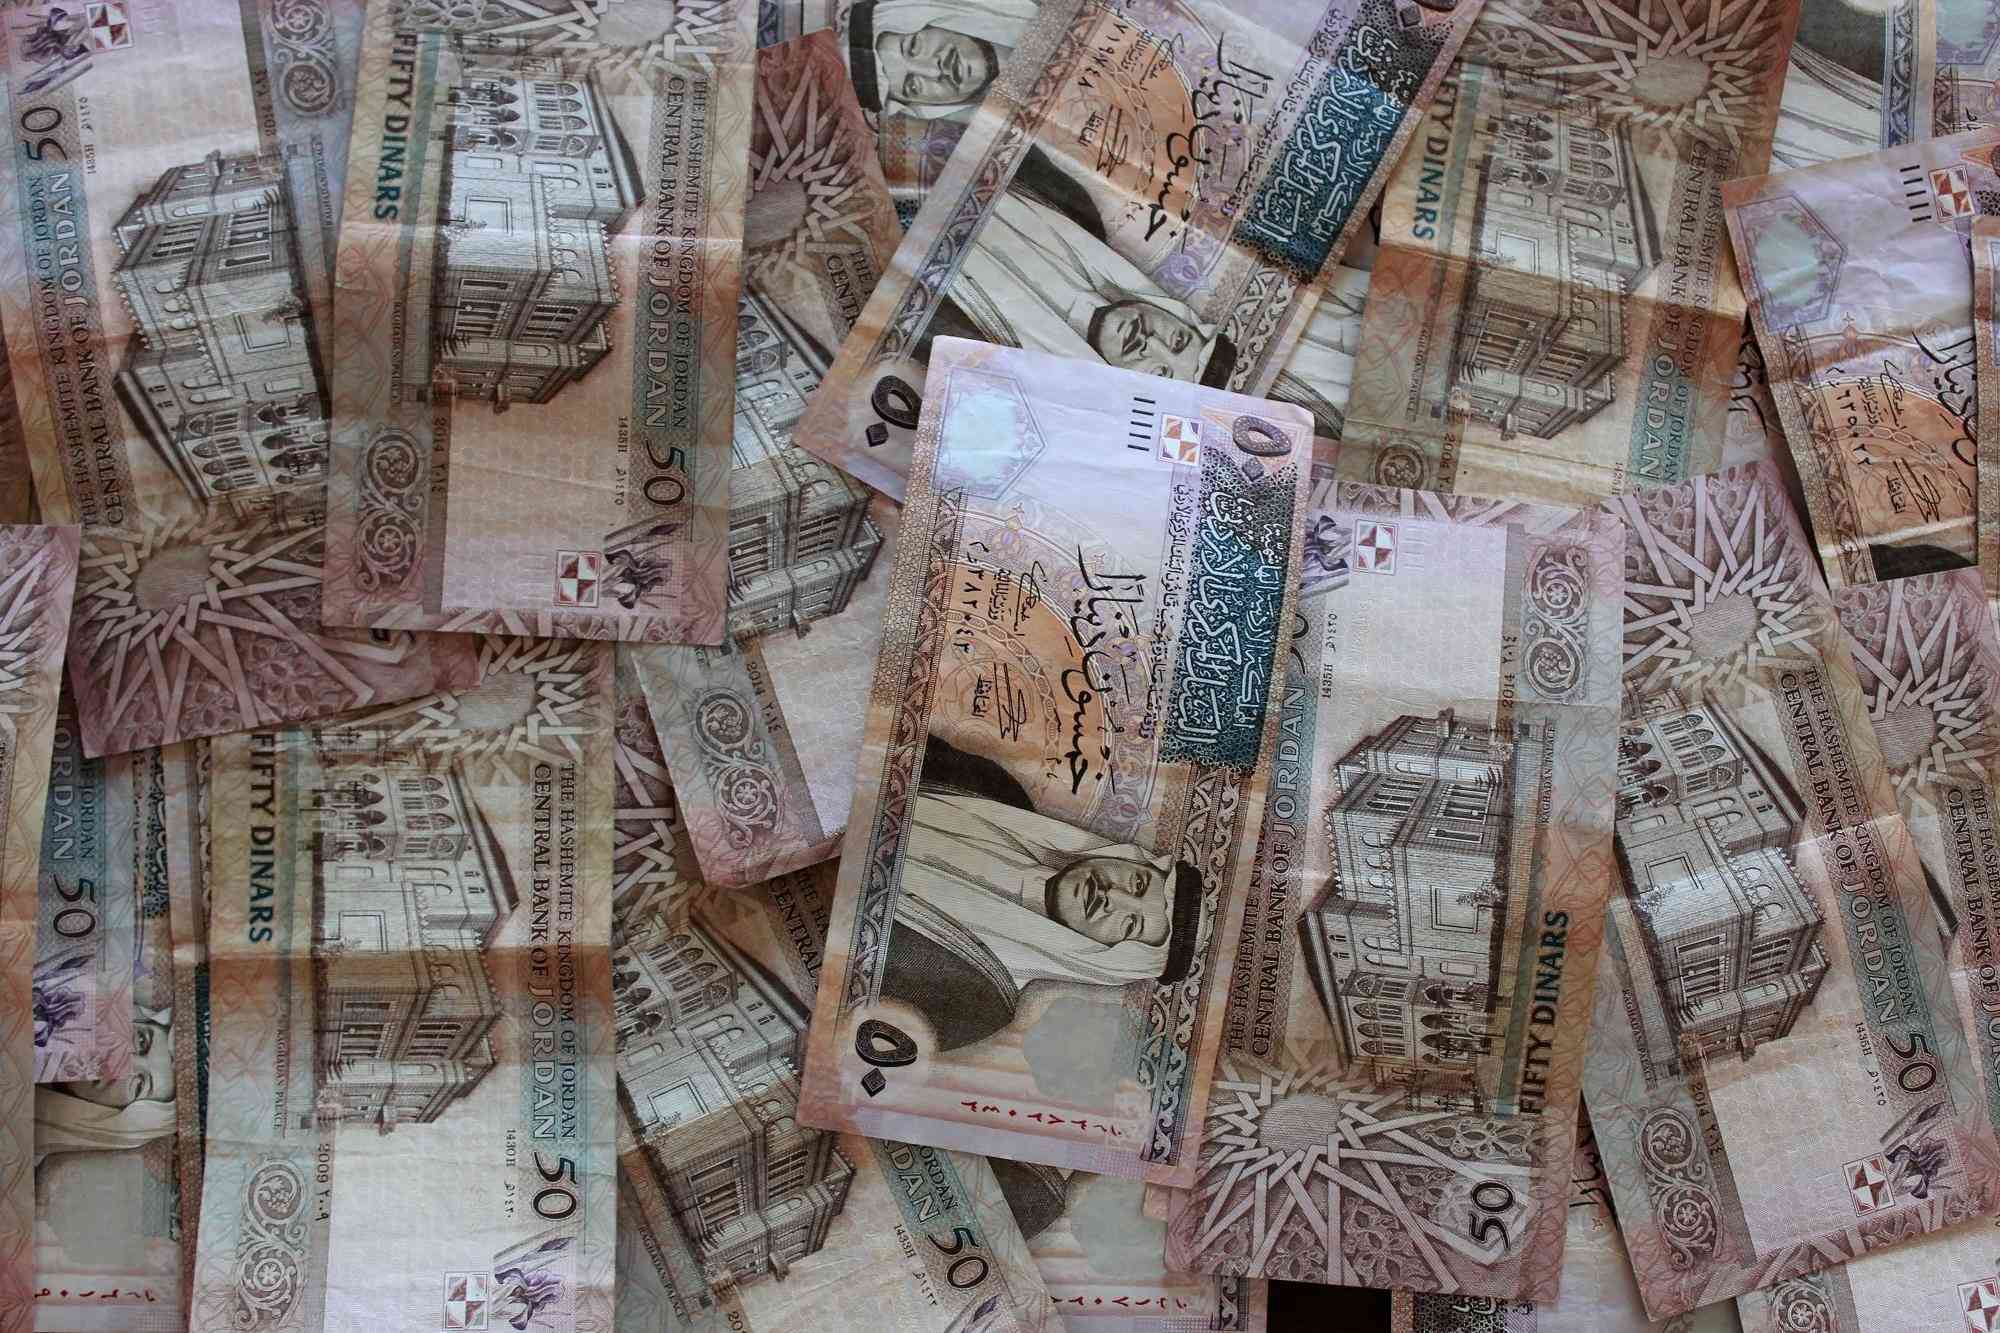 مئات الأردنيين ستؤول أموالهم إلى الحكومة (أسماء)